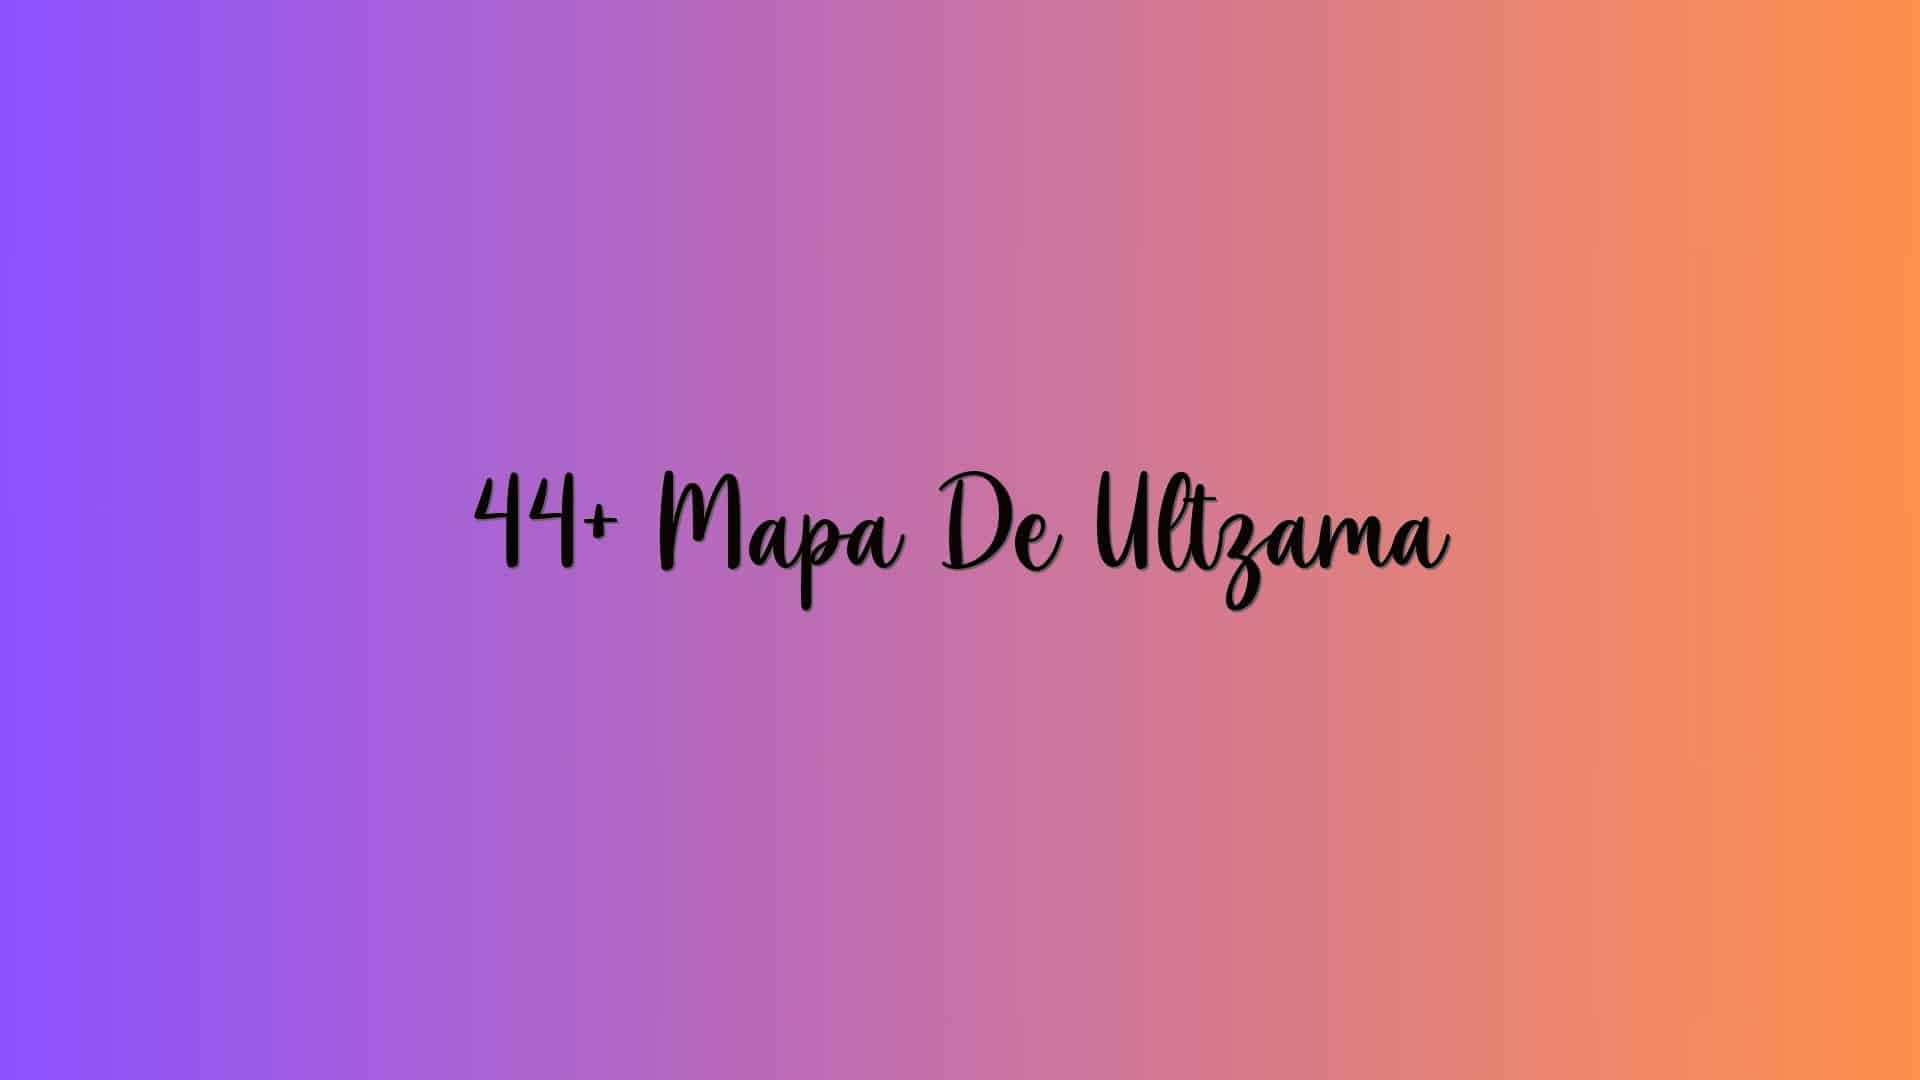 44+ Mapa De Ultzama